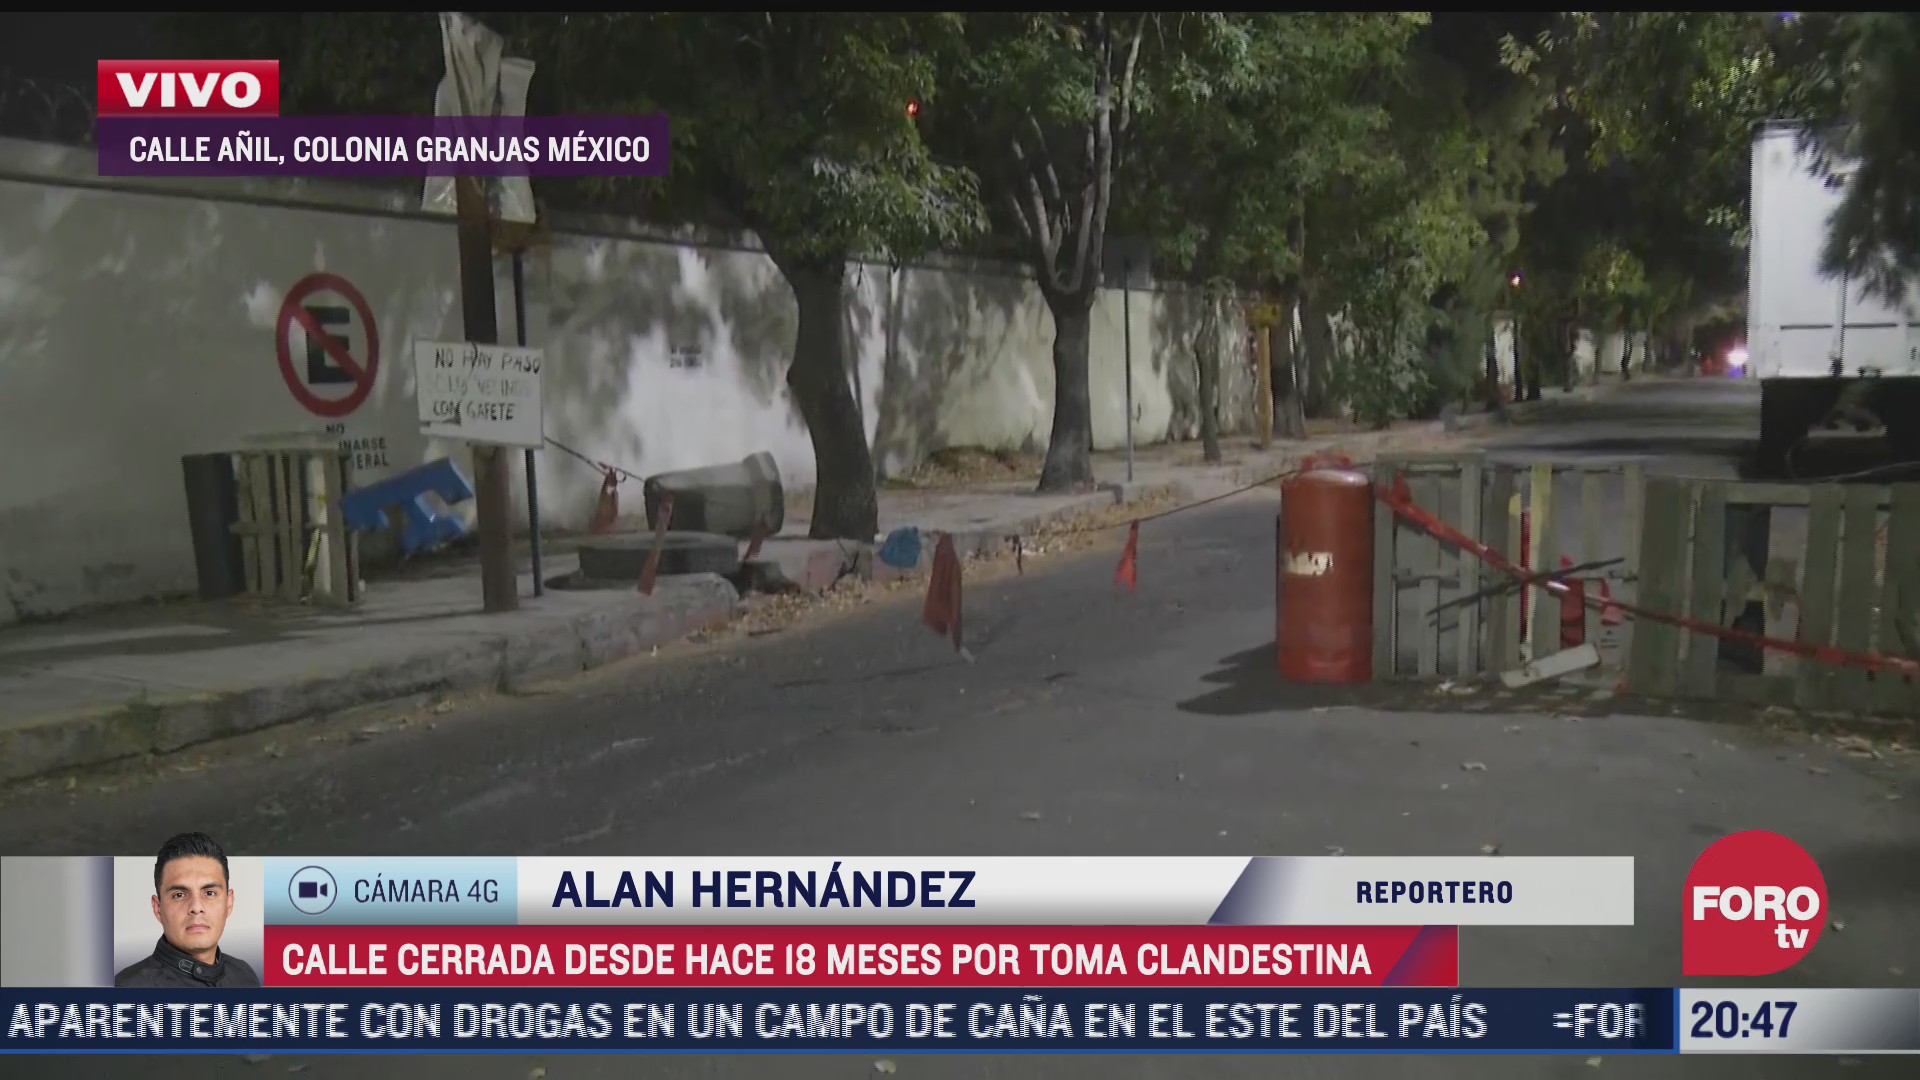 calle lleva 18 meses cerrada tras deteccion de toma clandestina en granjas mexico